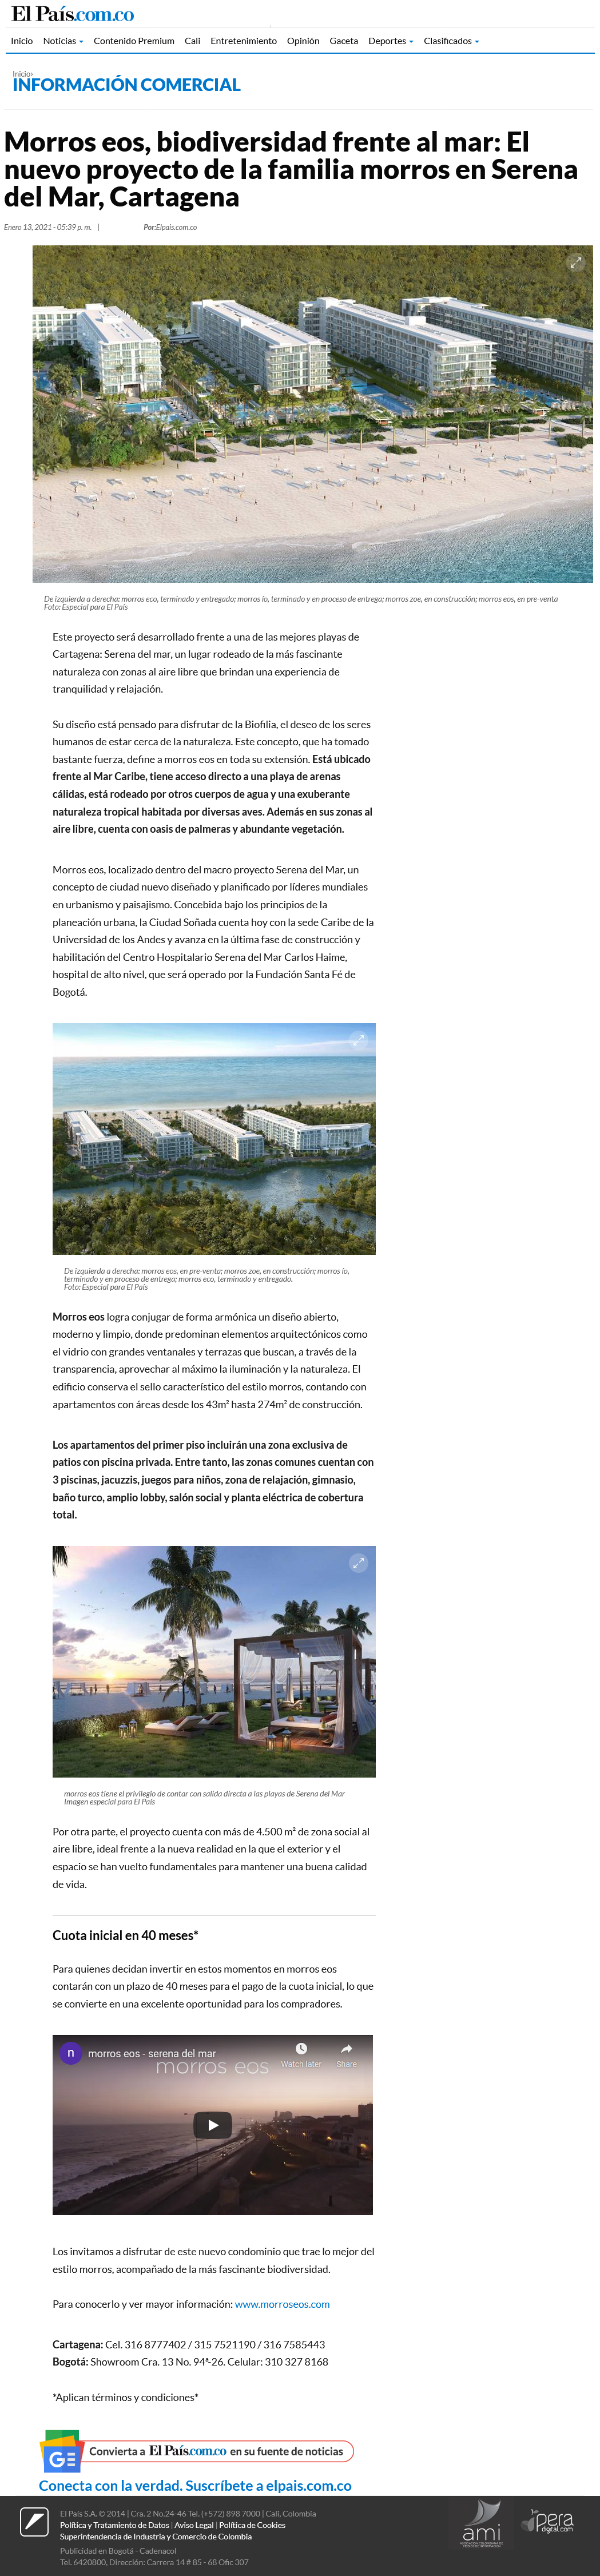 morros eos, biodiversidad frente al mar: El nuevo proyecto de la familia morros en Serena del Mar, Cartagena